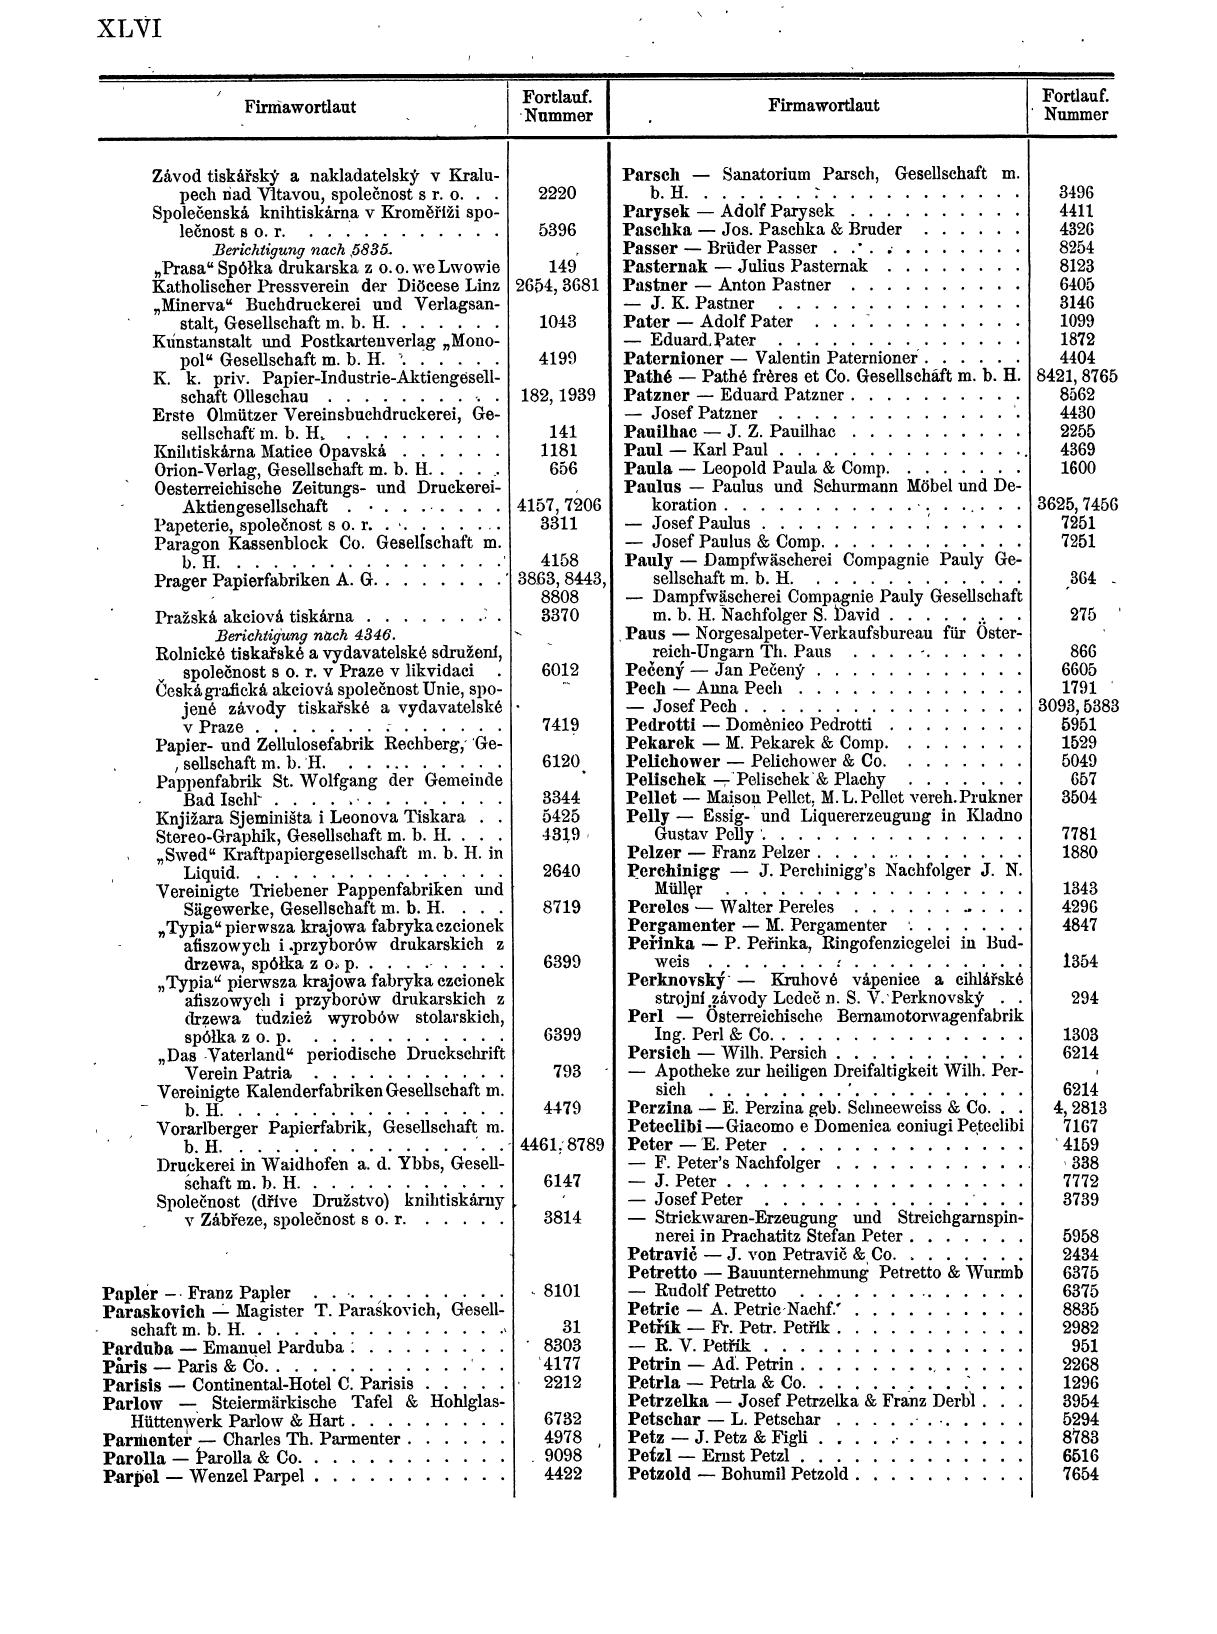 Zentralblatt für die Eintragungen in das Handelsregister 1913, Teil 1 - Seite 54